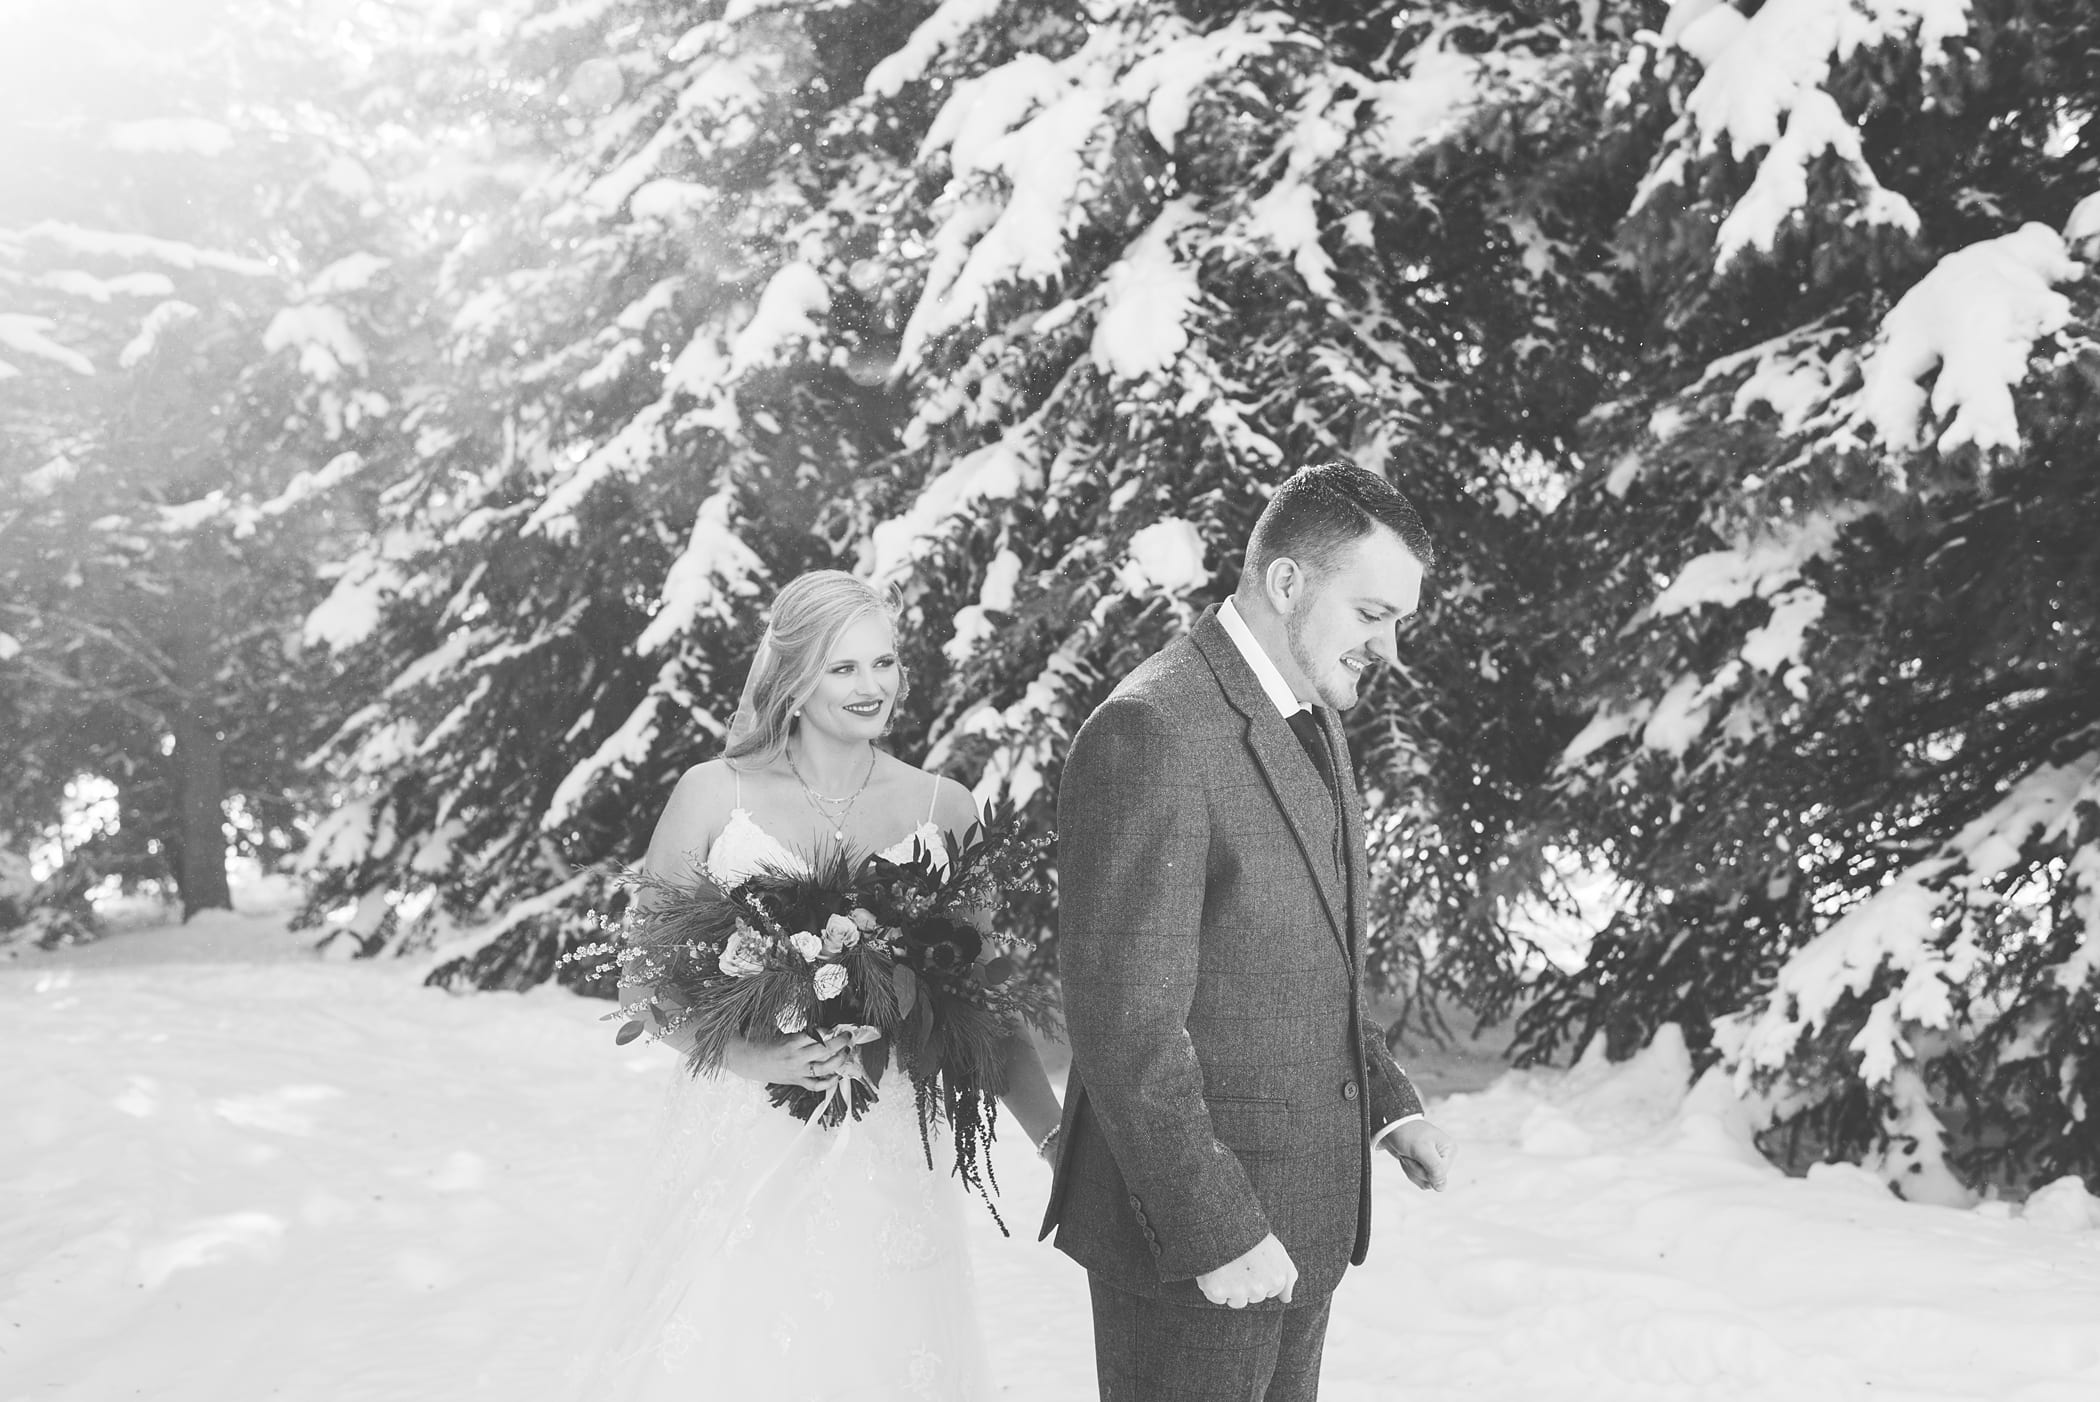 Island Park Winter Wedding by Michelle & Logan